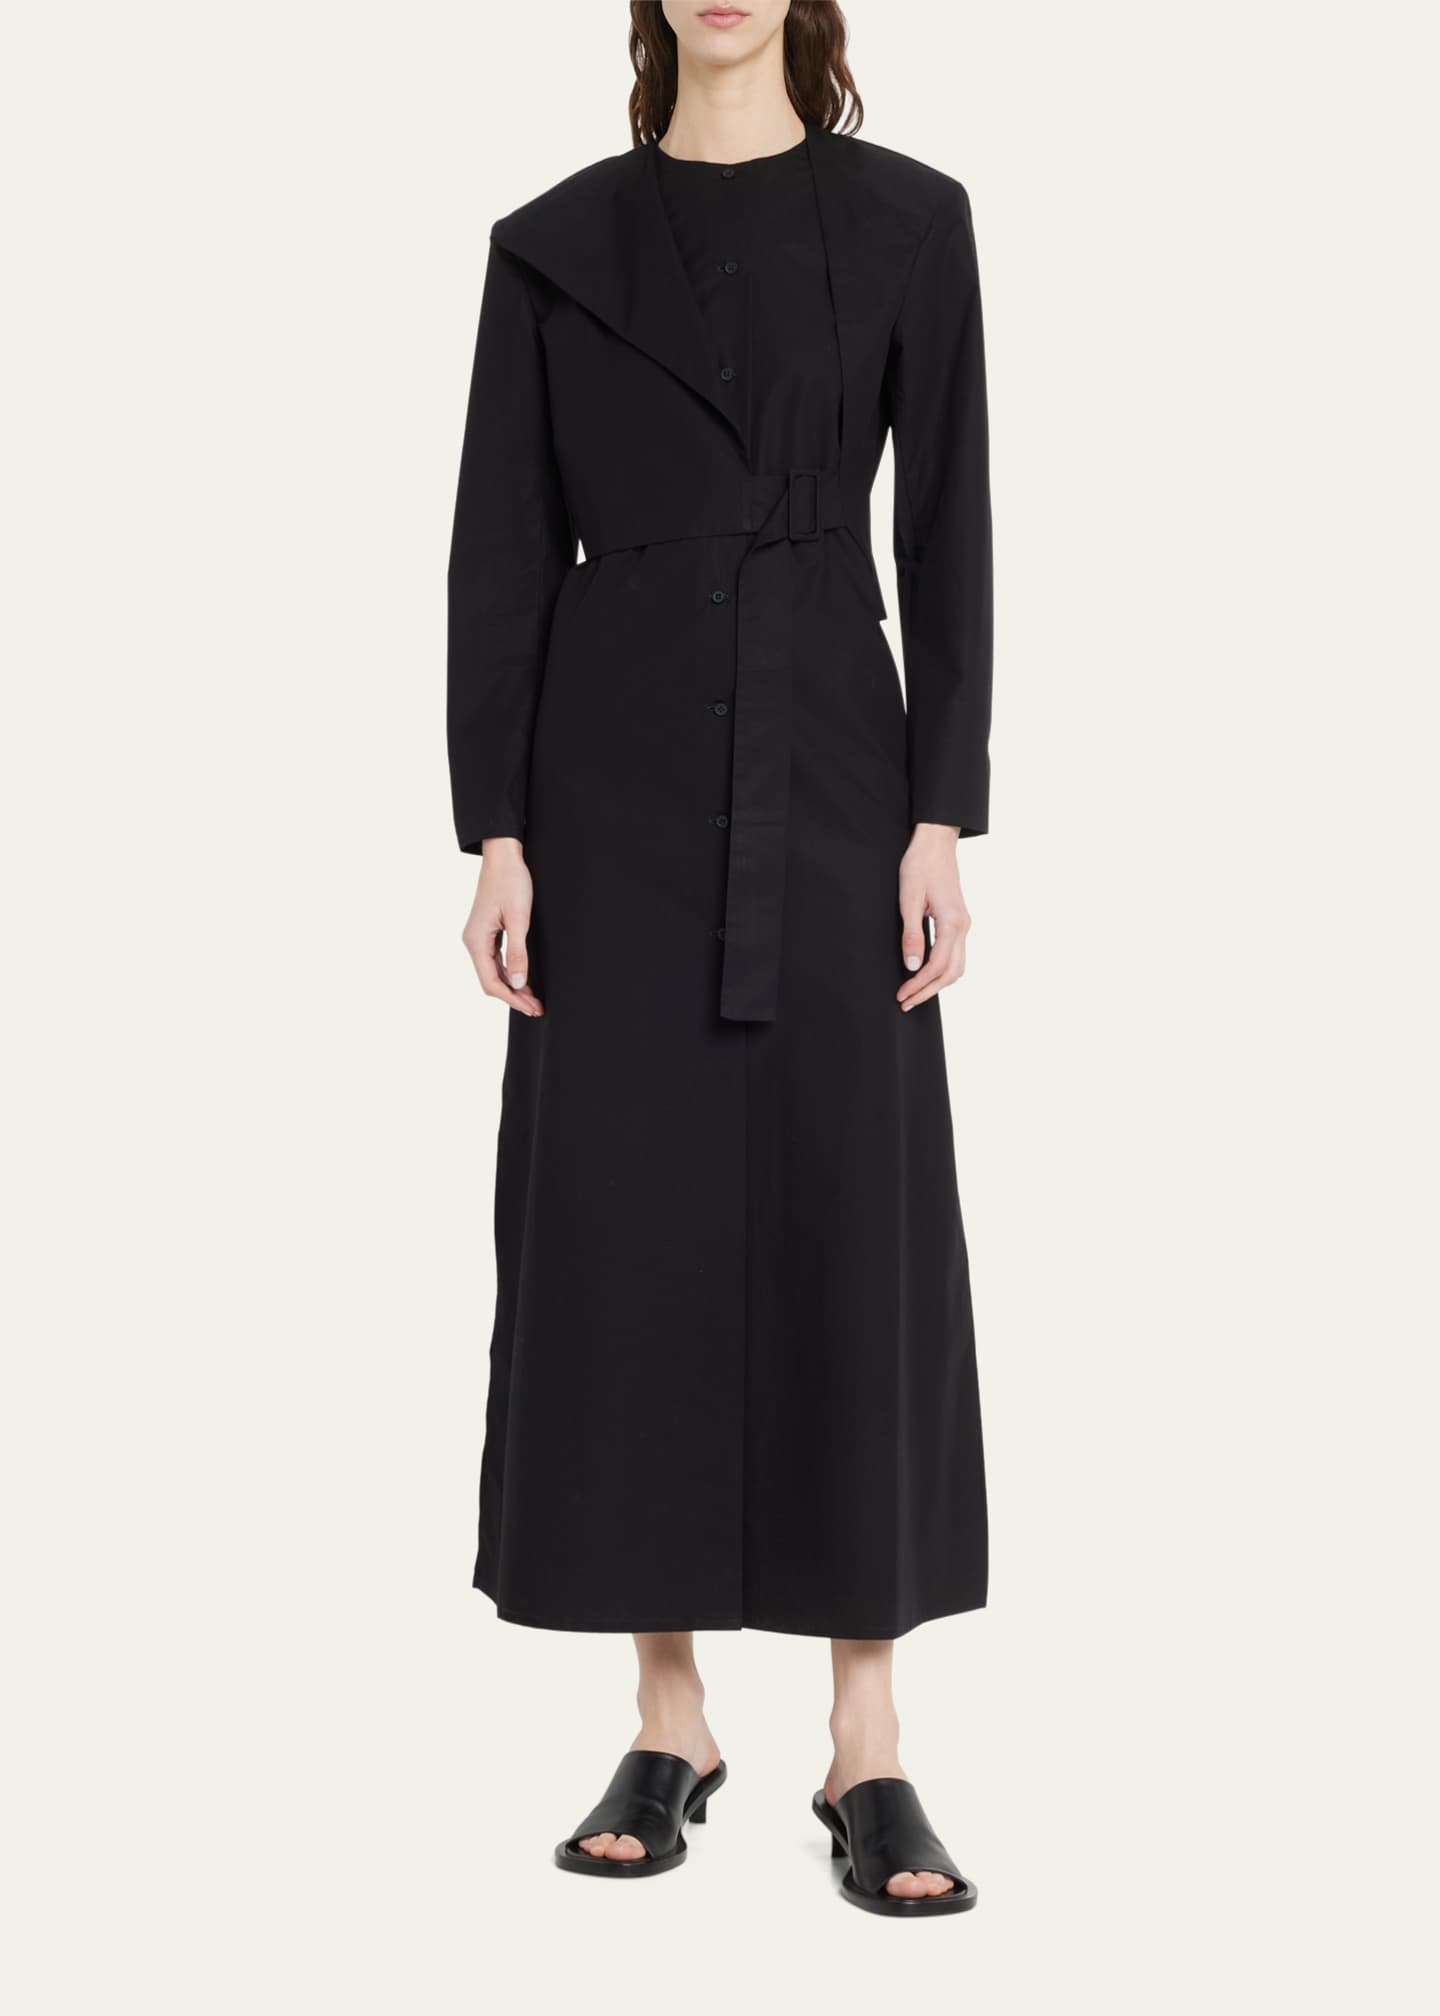 Rohe Sleeveless Maxi Dress with Detachable Jacket - Bergdorf Goodman